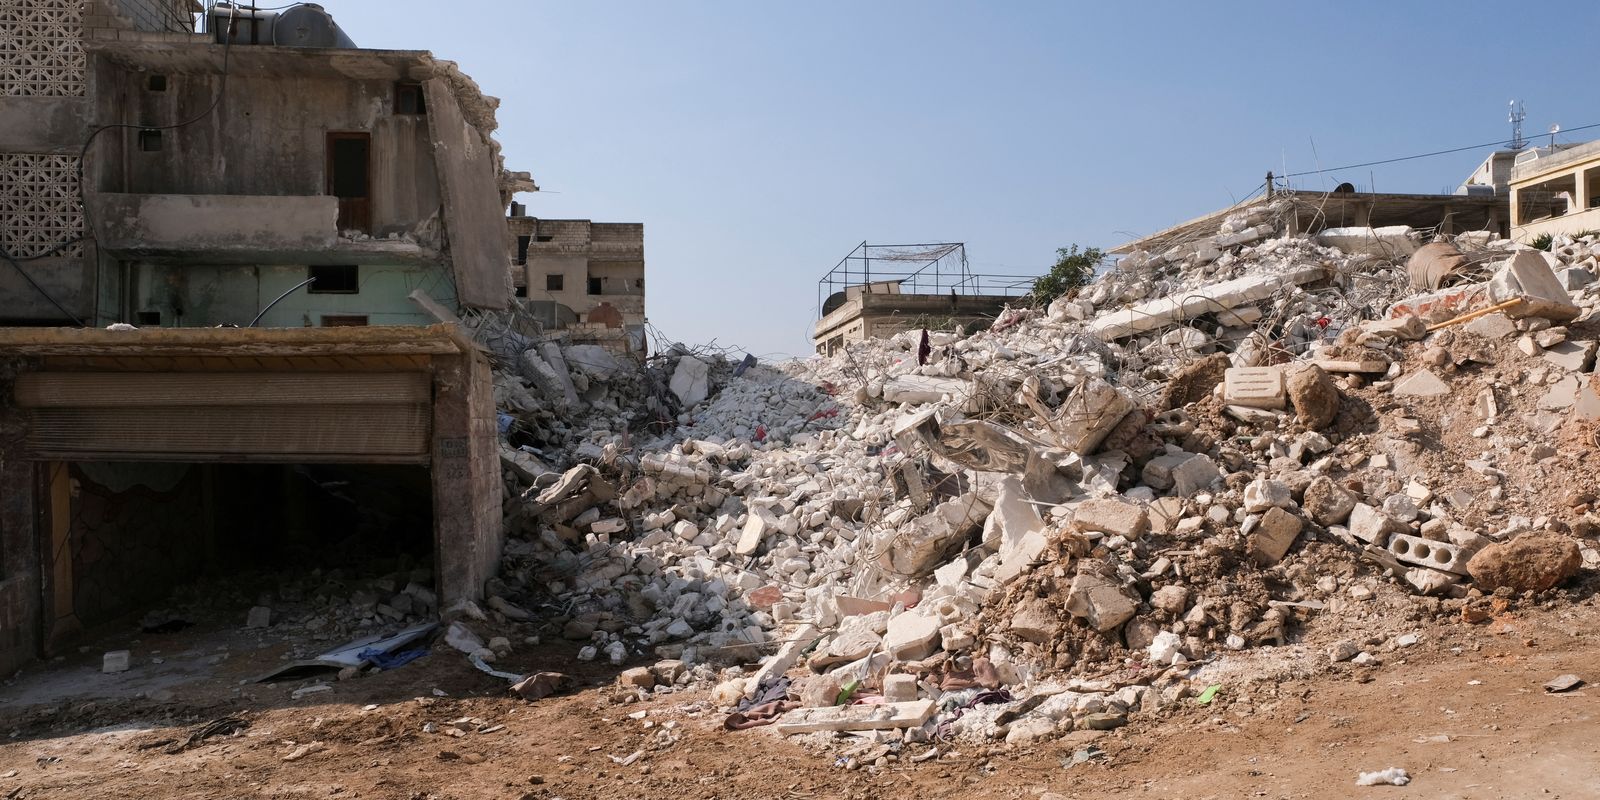 Turquia visa reconstrução pós-terremoto; sírios buscam mais ajuda